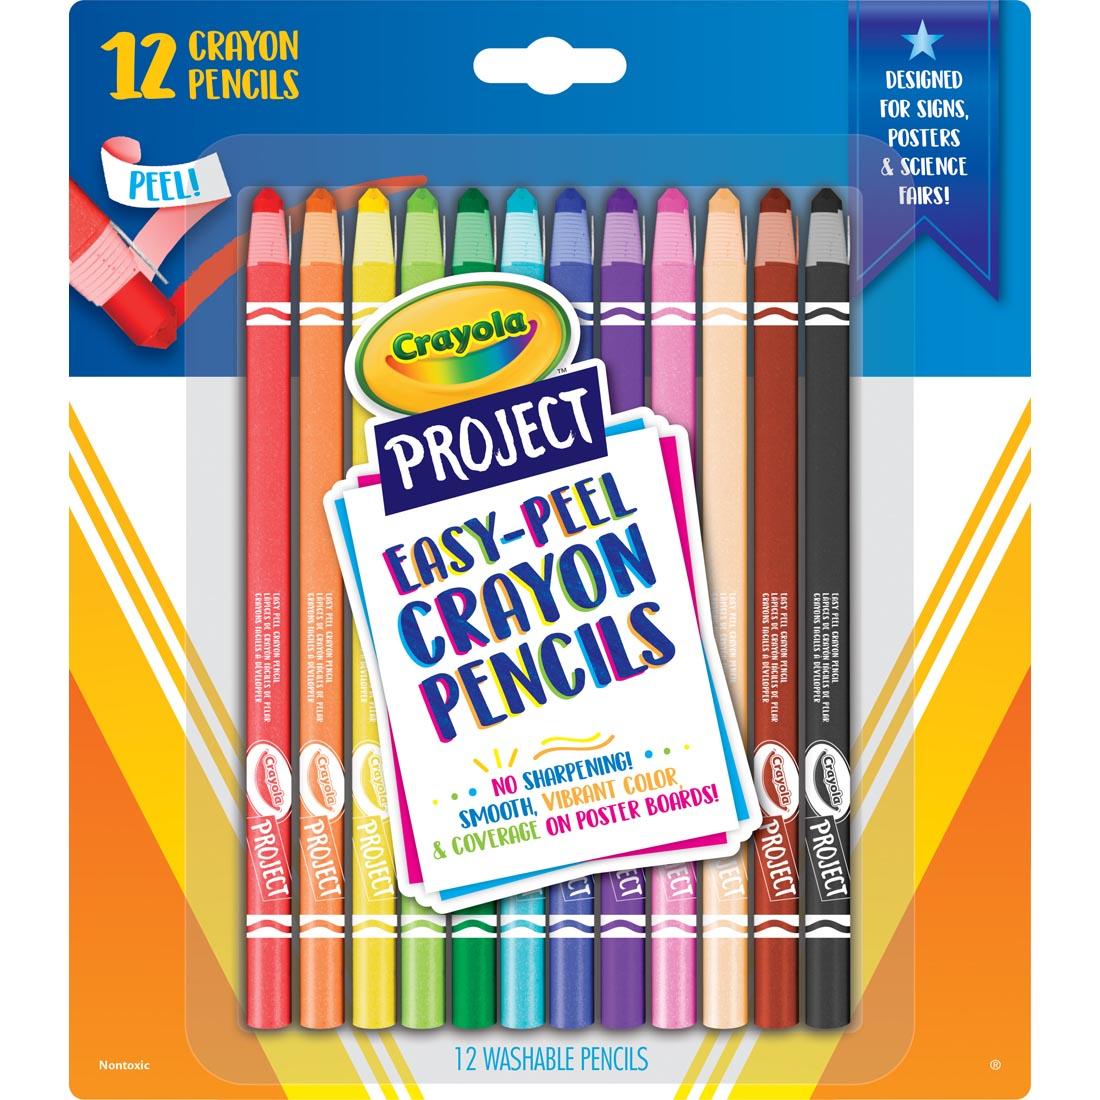 Crayola Easy-Peel Crayon Pencils 12-Count Set